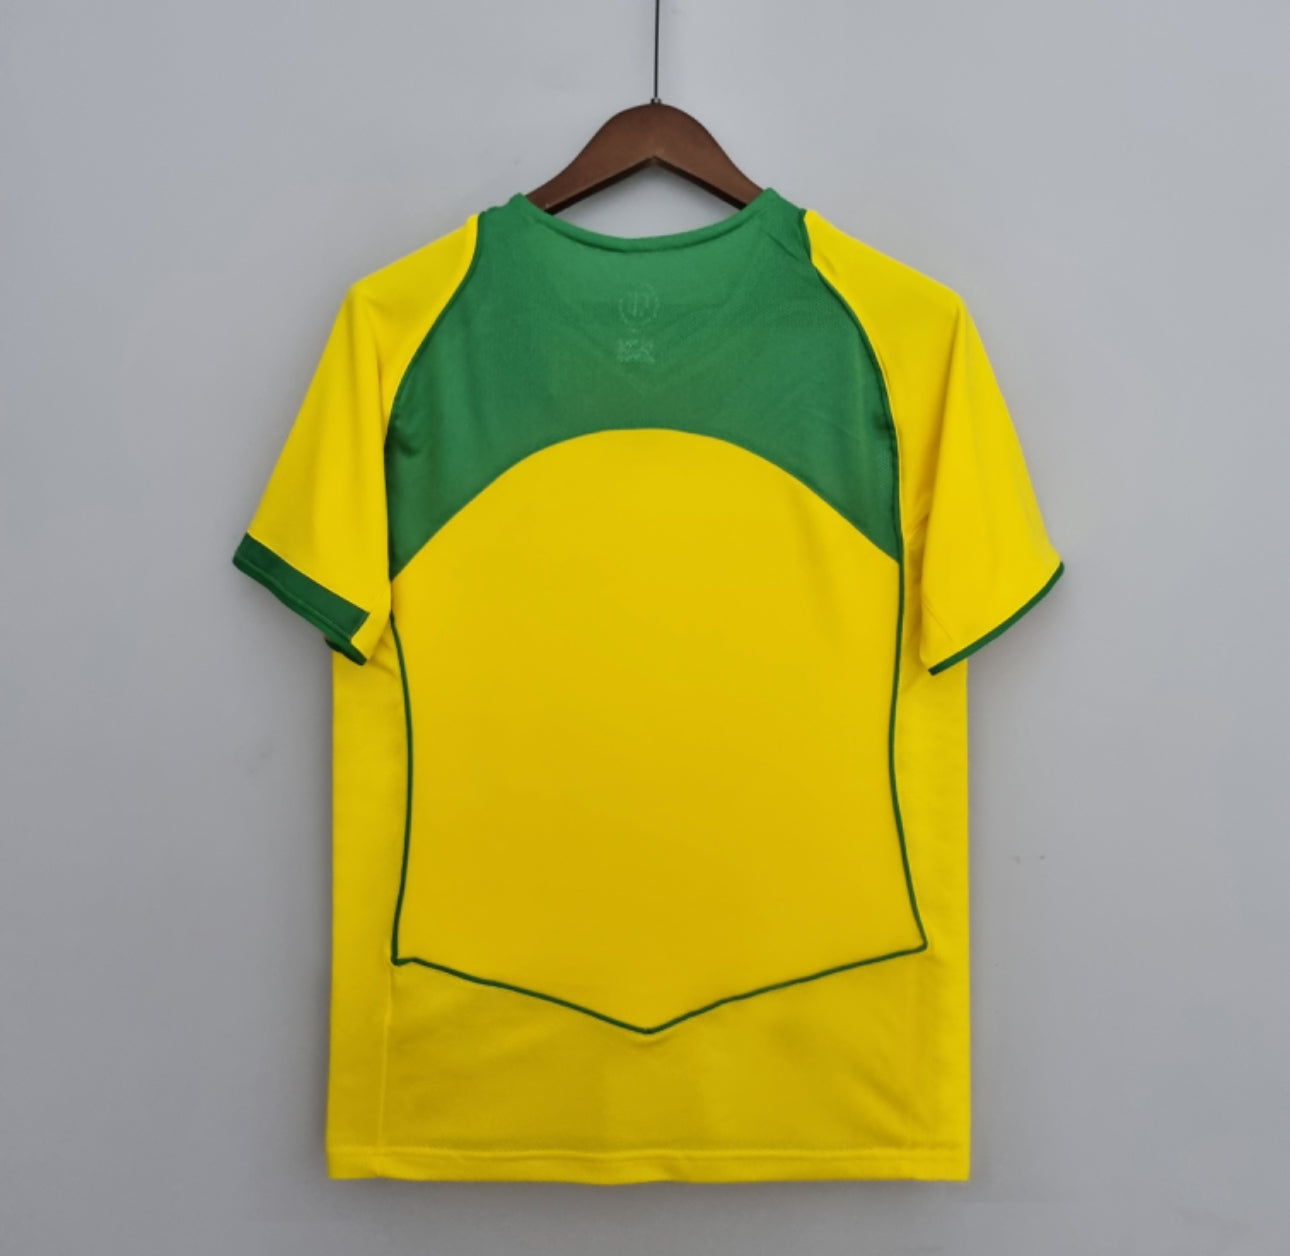 02 Brasil Kit